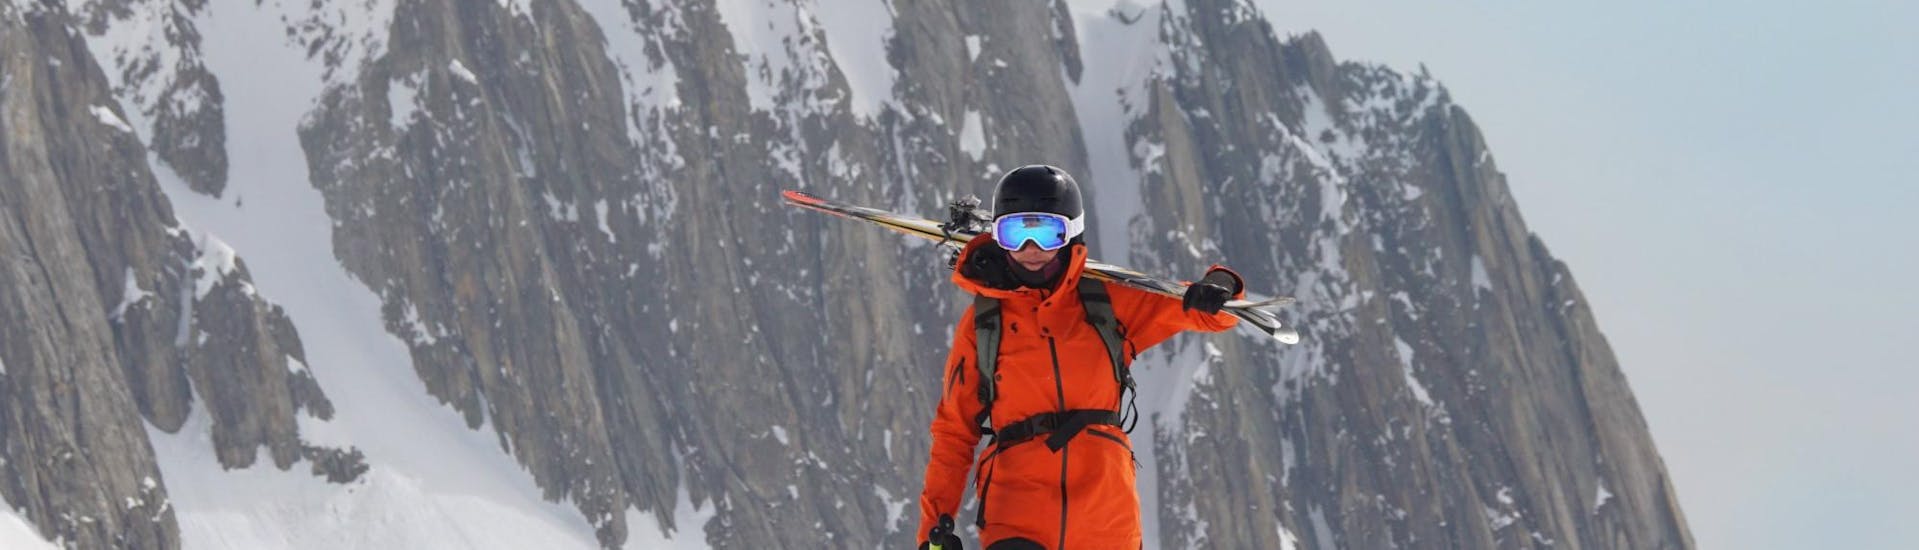 Privé skilessen voor volwassenen voor alle niveaus met Eco Ski School Andermatt.